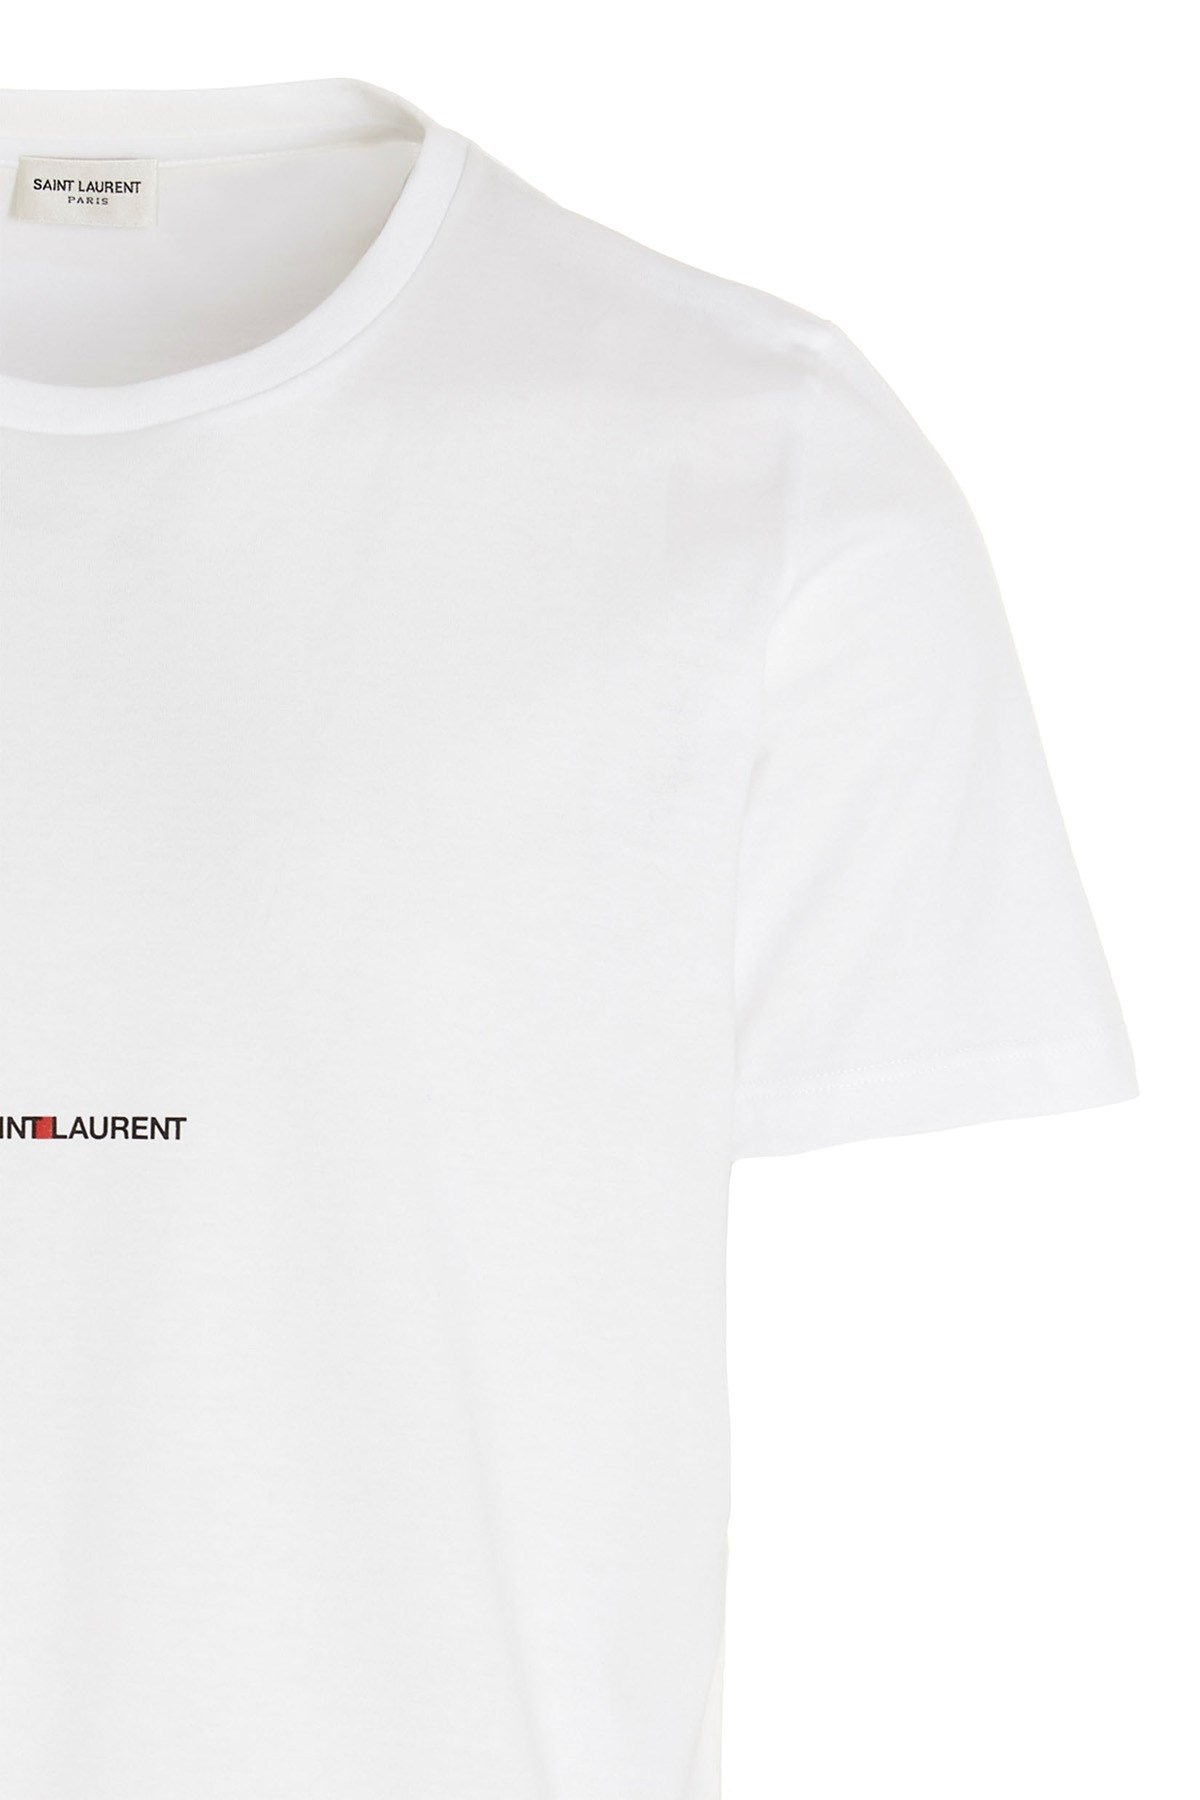 'Saint Laurent Rive Gauche' T-shirt - 4